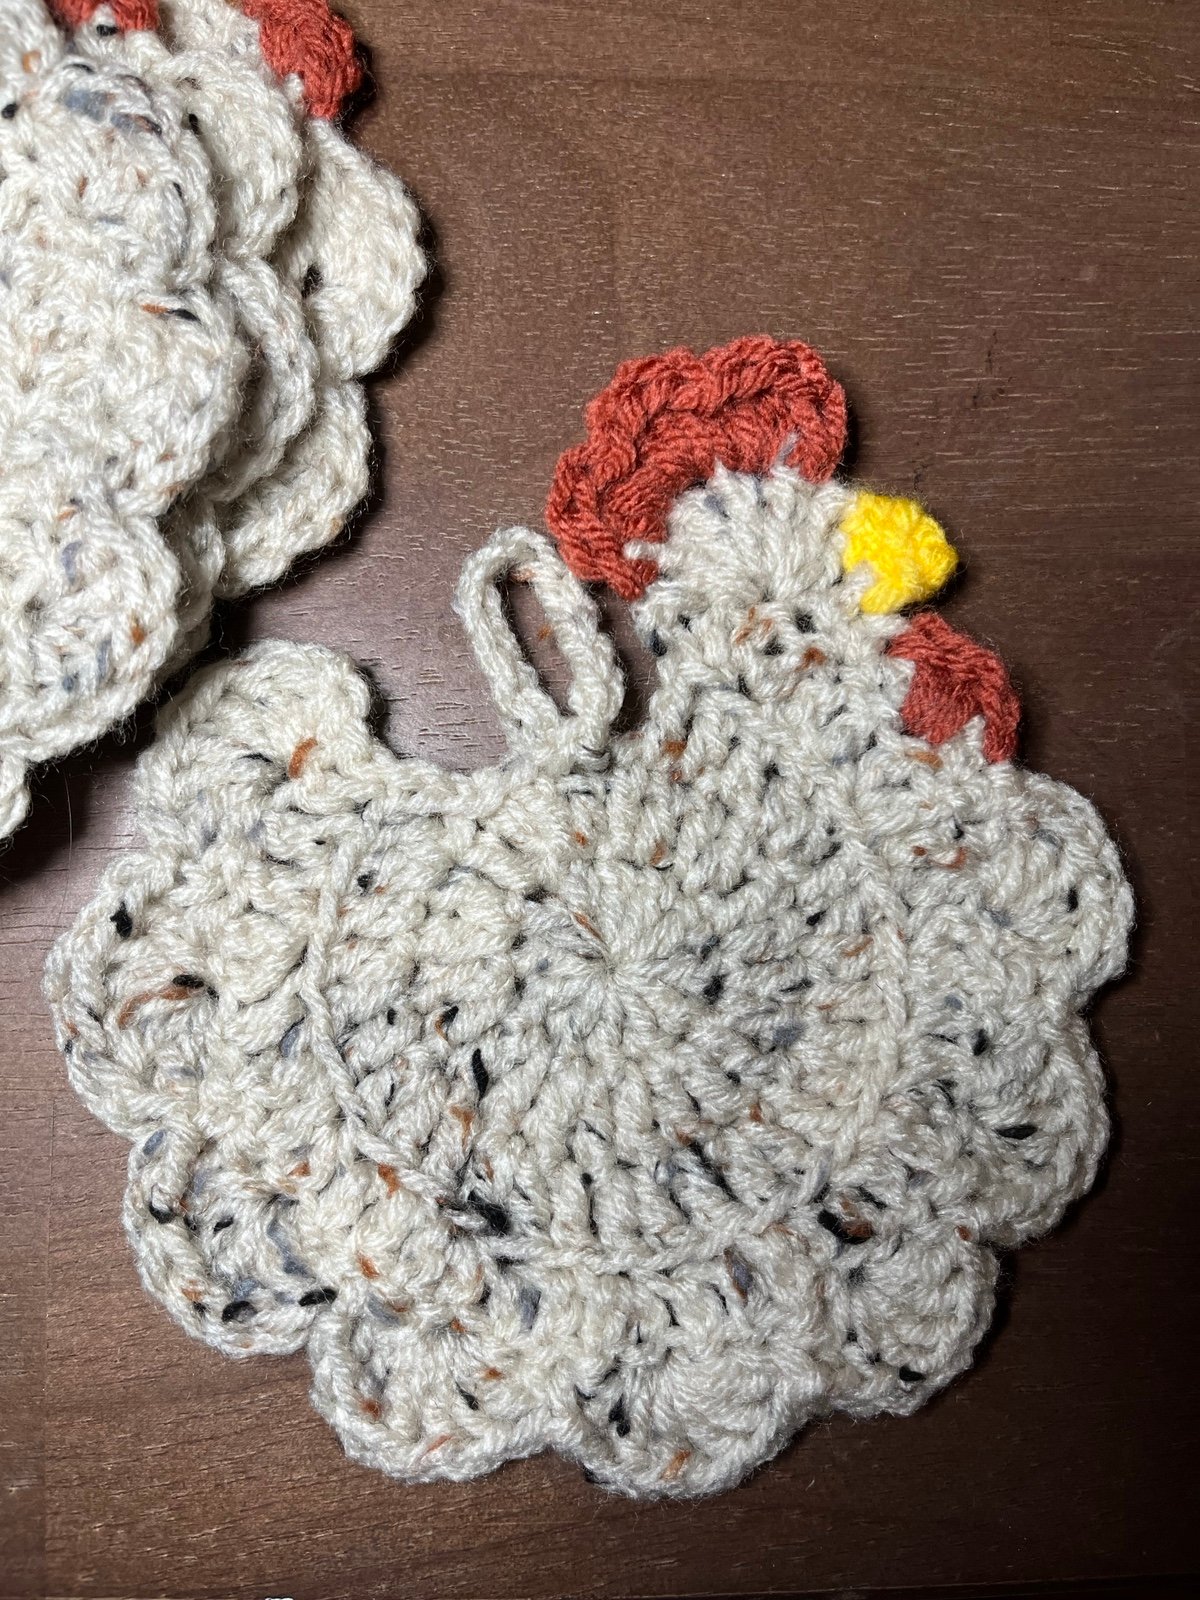 Crochet chicken coasters set of 4 IpP2zHCge